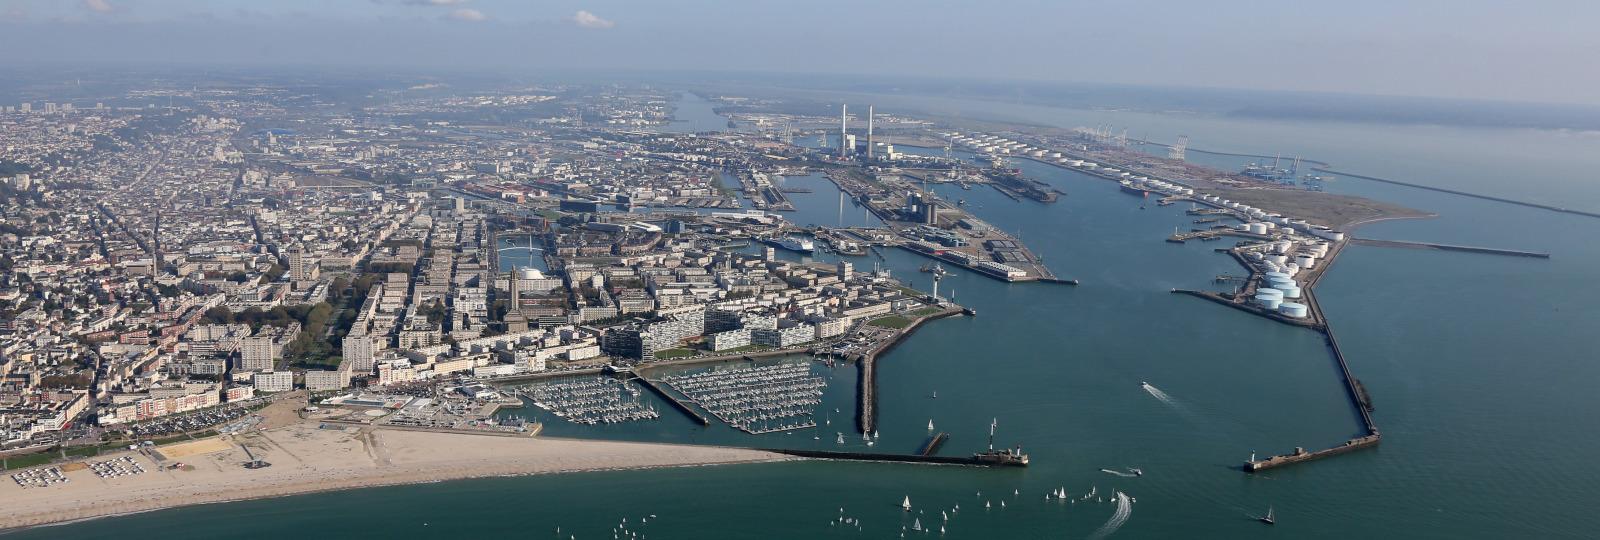 Crise en mer Rouge : des conséquences limitées pour les ports français... pour le moment